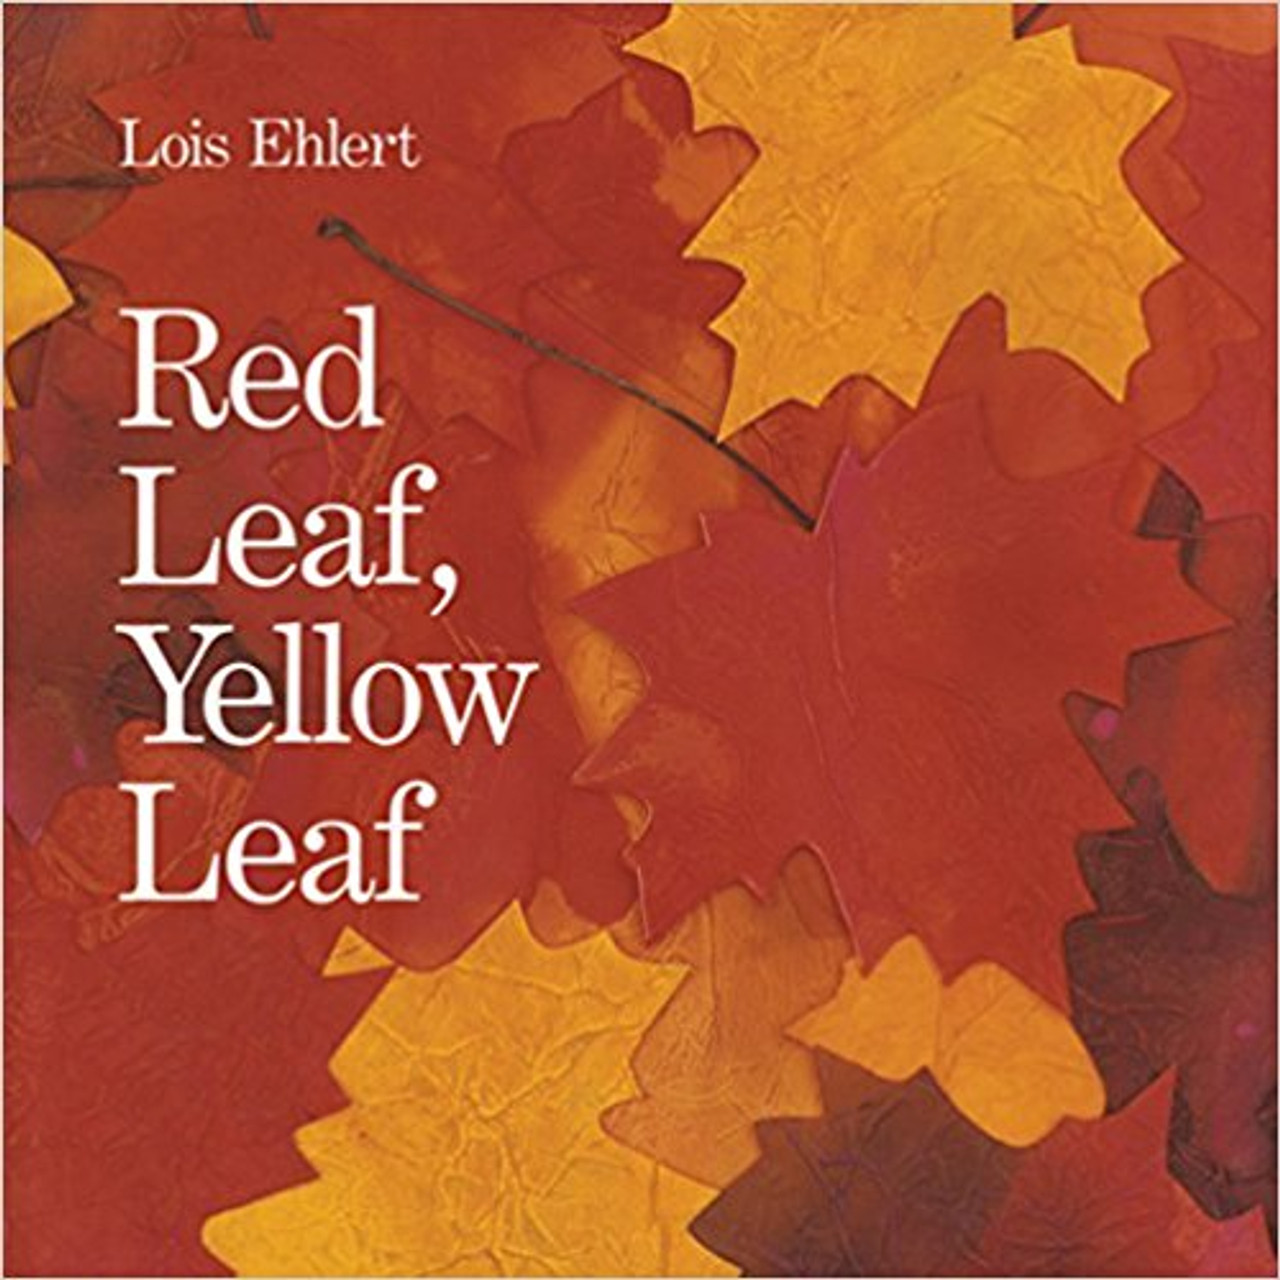 Red Leaf, Yellow Leaf by I O Sawa